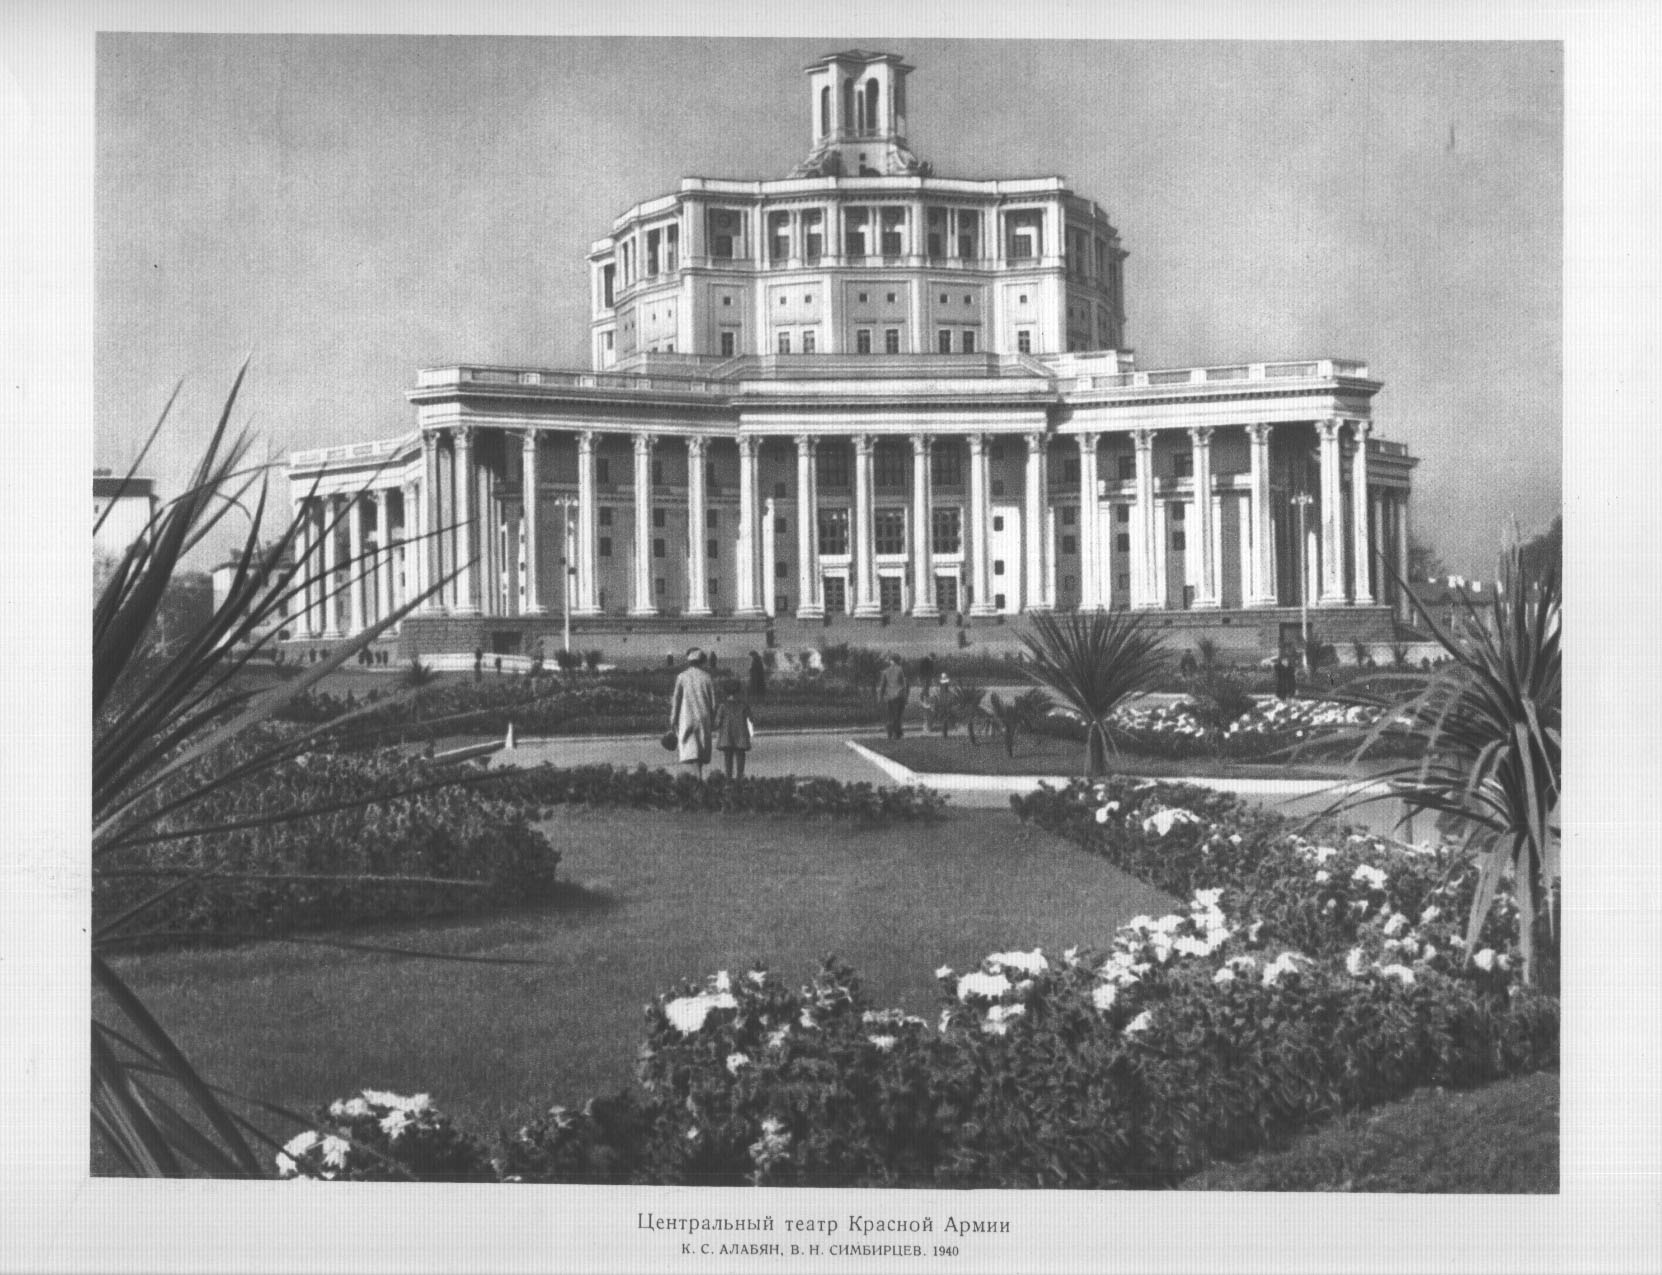 Центральный театр Красной Армии. К. С. Алабян, В. Н. Симбирцев. 1940